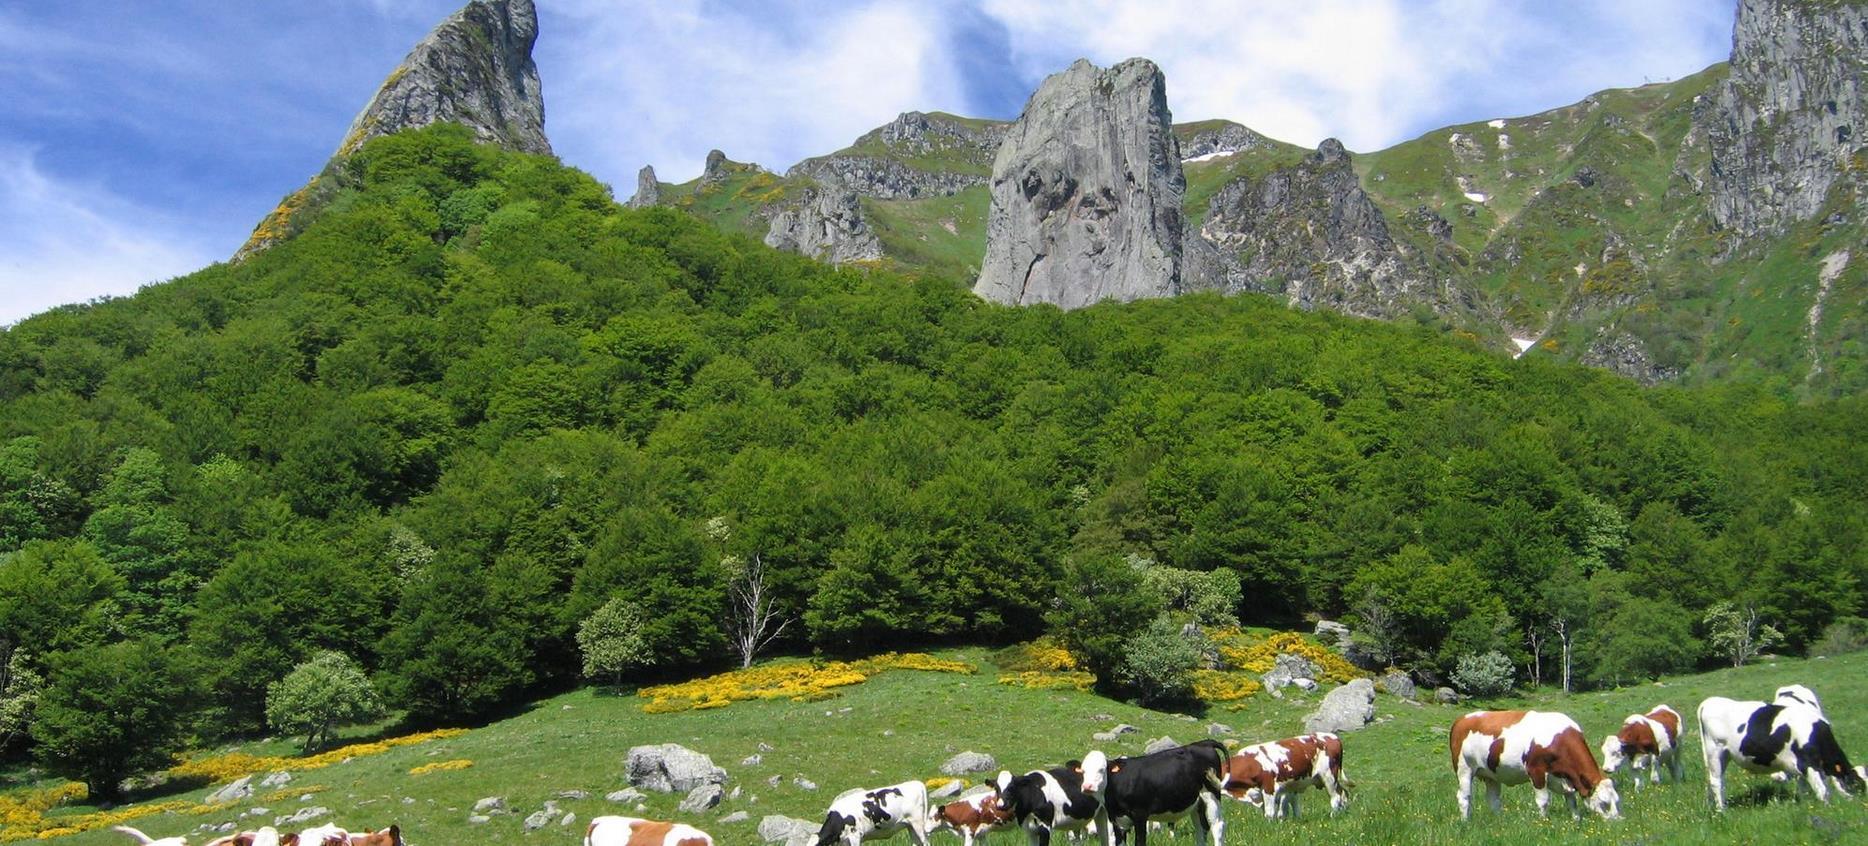 Super Besse - Herd of cows under the Dent de la Rancune and the Crête du Coq